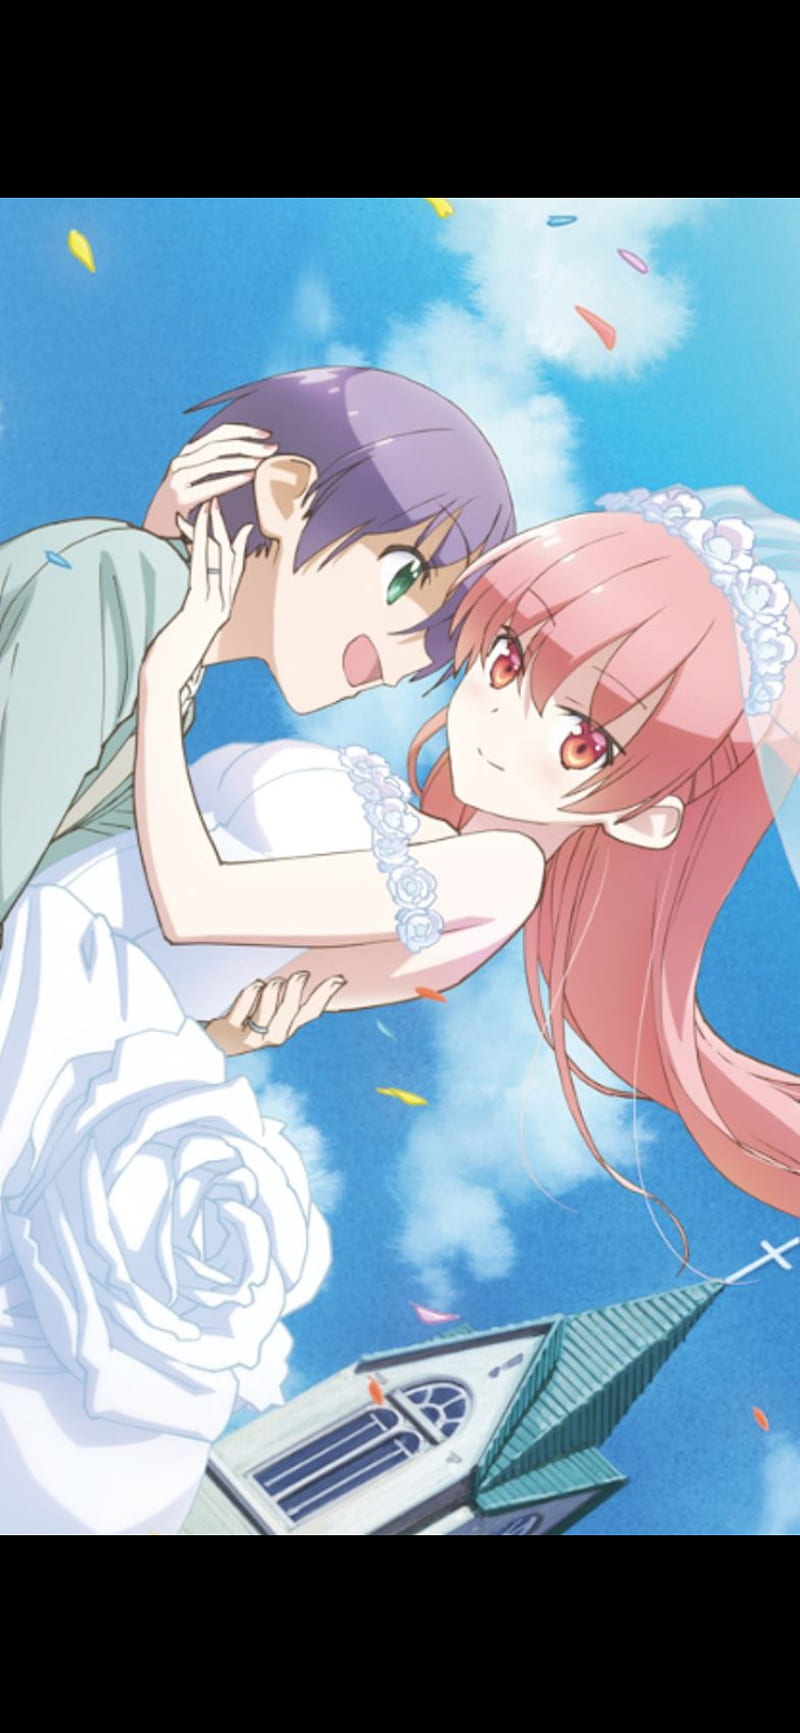 tonikakukawaii #tsukasa #nasa #kaguya #romance #anime